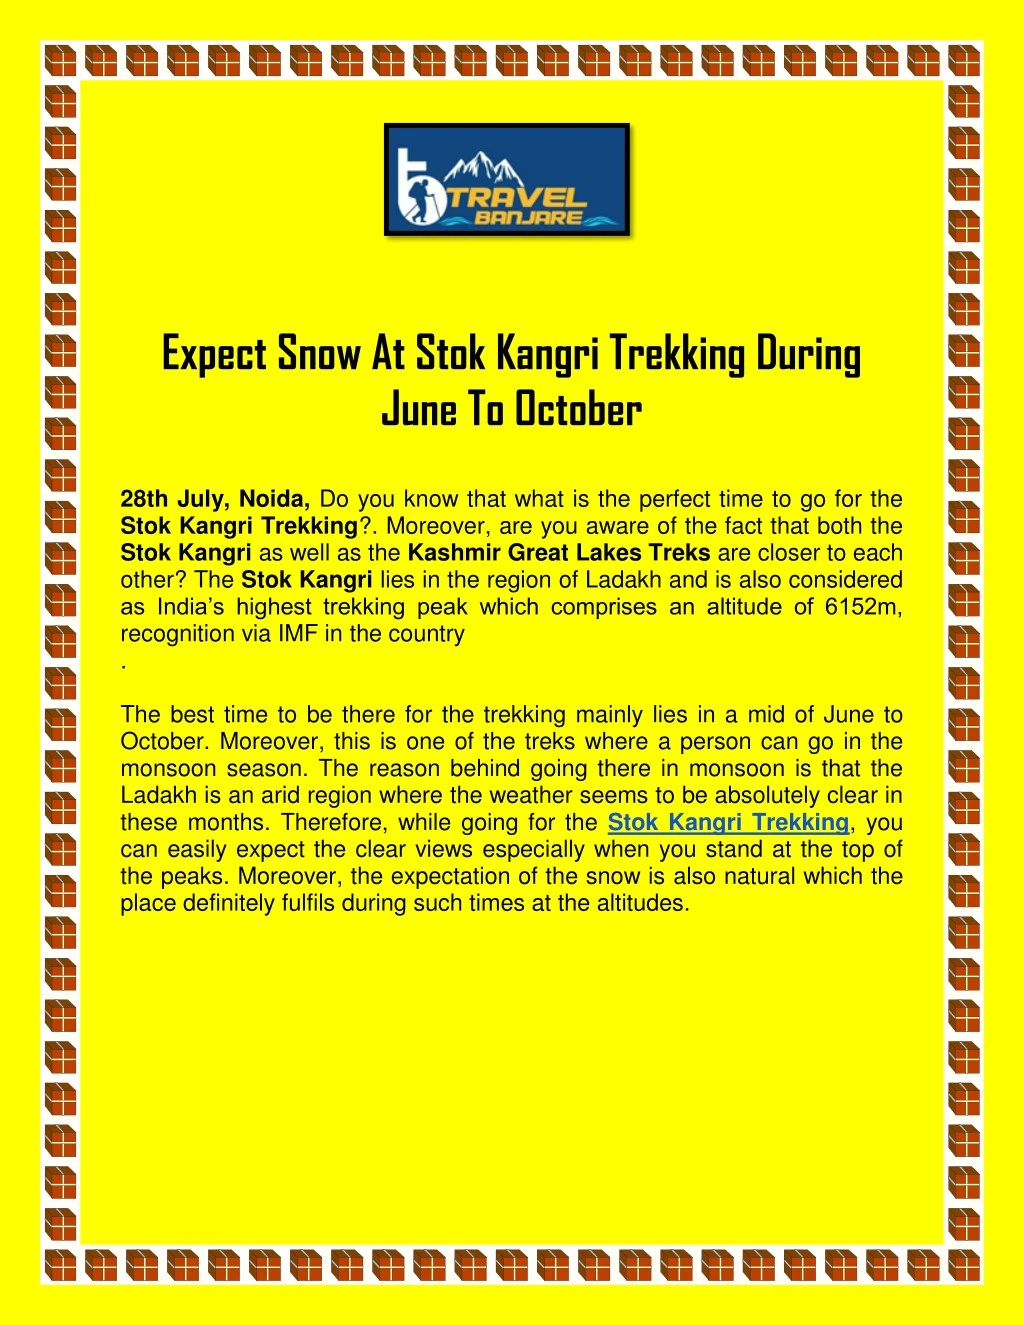 expect snow at stok kangri trekking during june